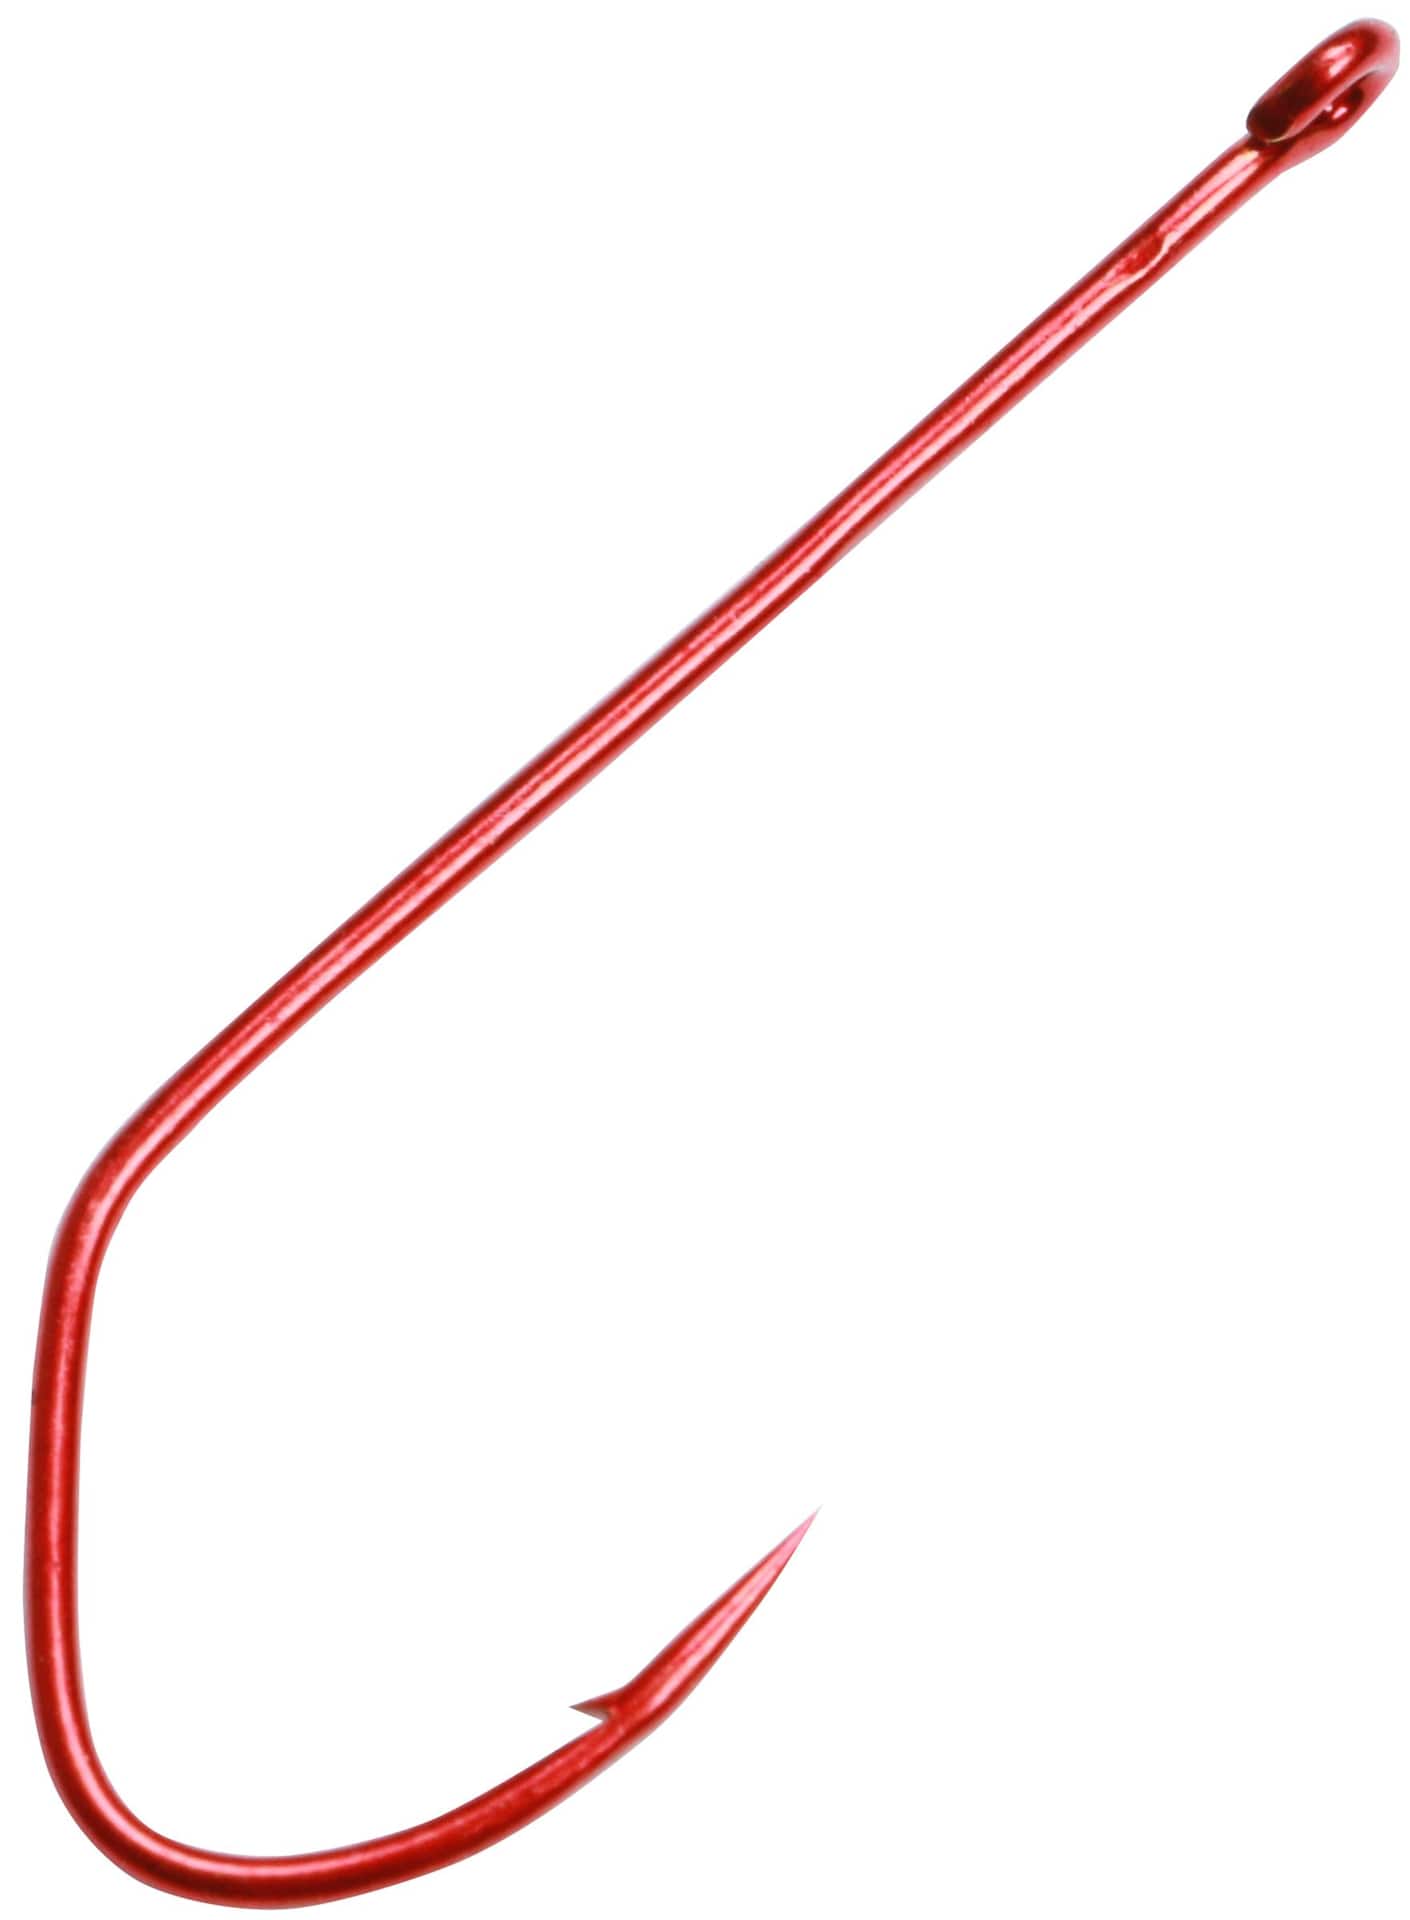 Matzuo Aberdeen Sickle Hooks, Red Chrome, 25-pk